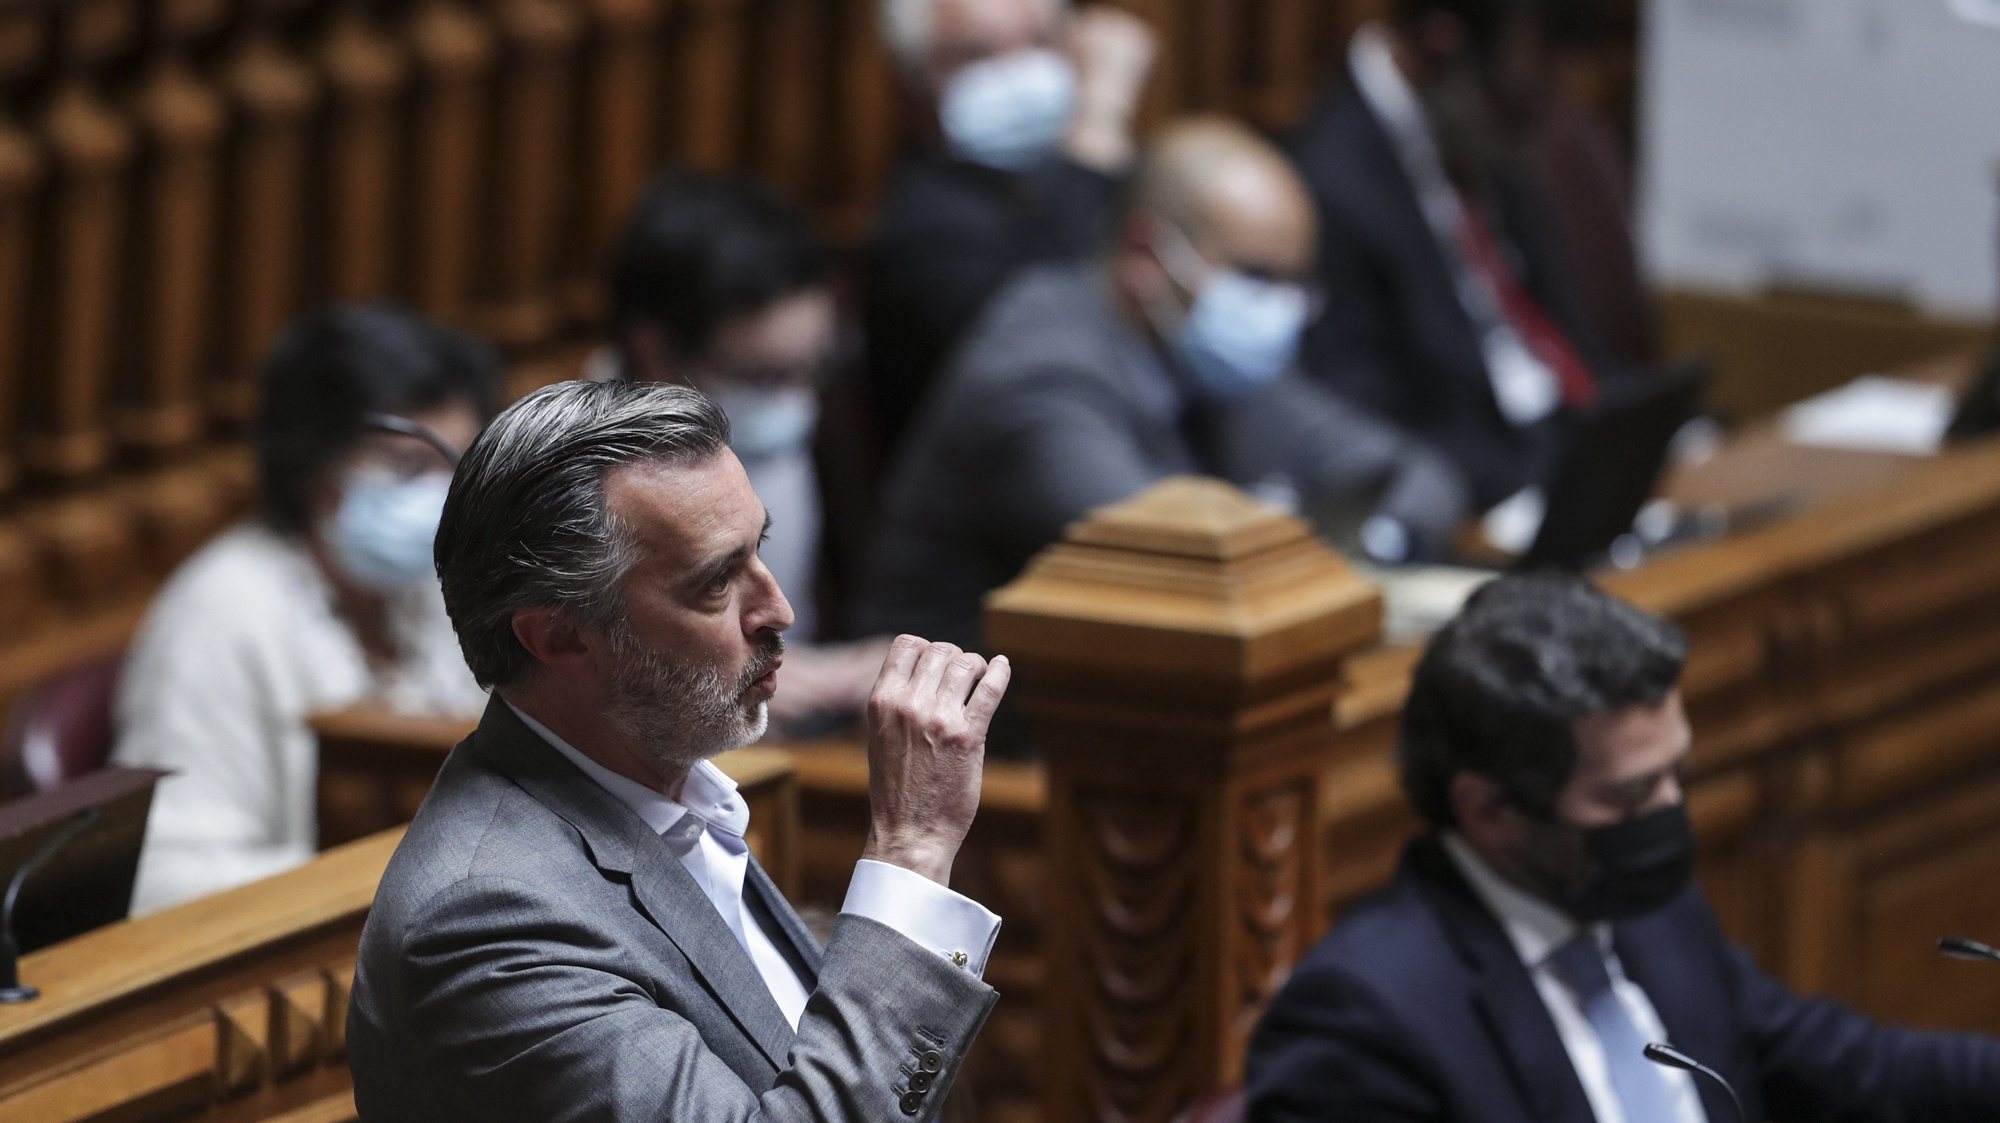 O deputado do Iniciativa Liberal (IL), João Cotrim de Figueiredo, intervém durante o debate parlamentar na Assembleia da República em Lisboa, 12 de maio de 2021. TIAGO PETINGA/LUSA